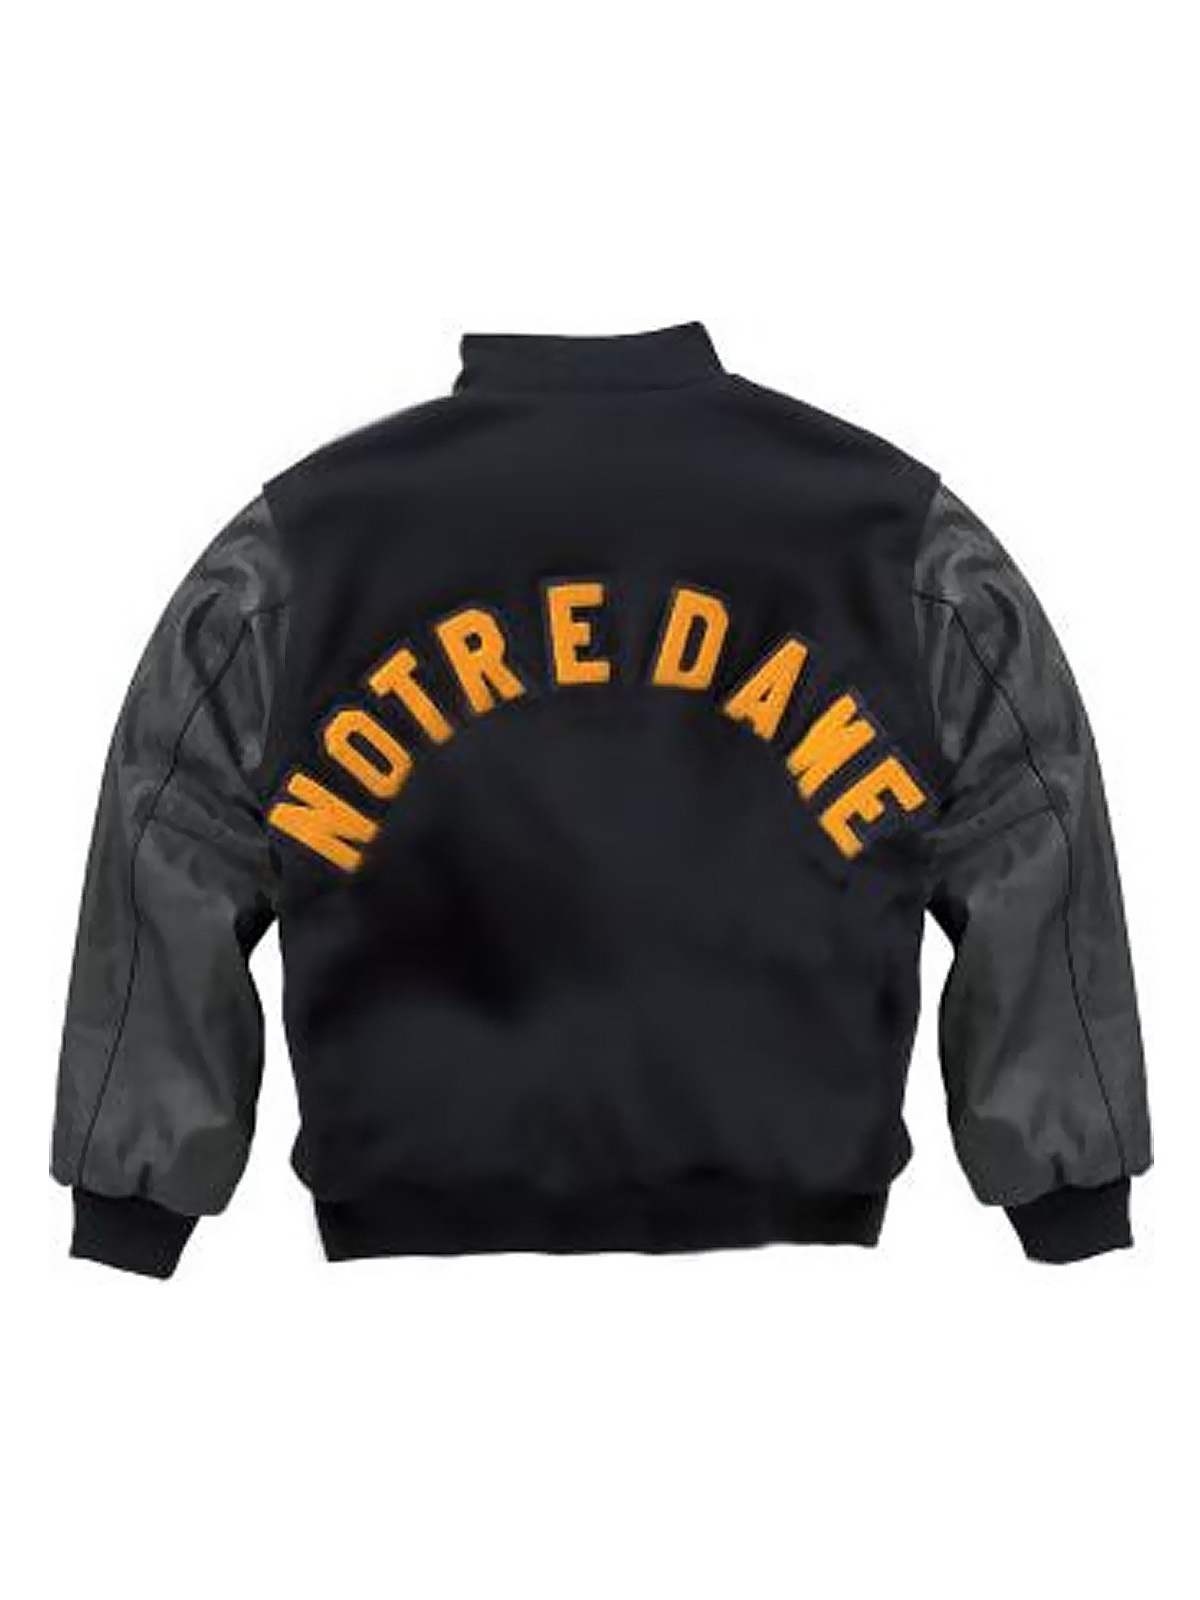 Wool University of Notre Dame Rudy Irish Jacket - A2 Jackets